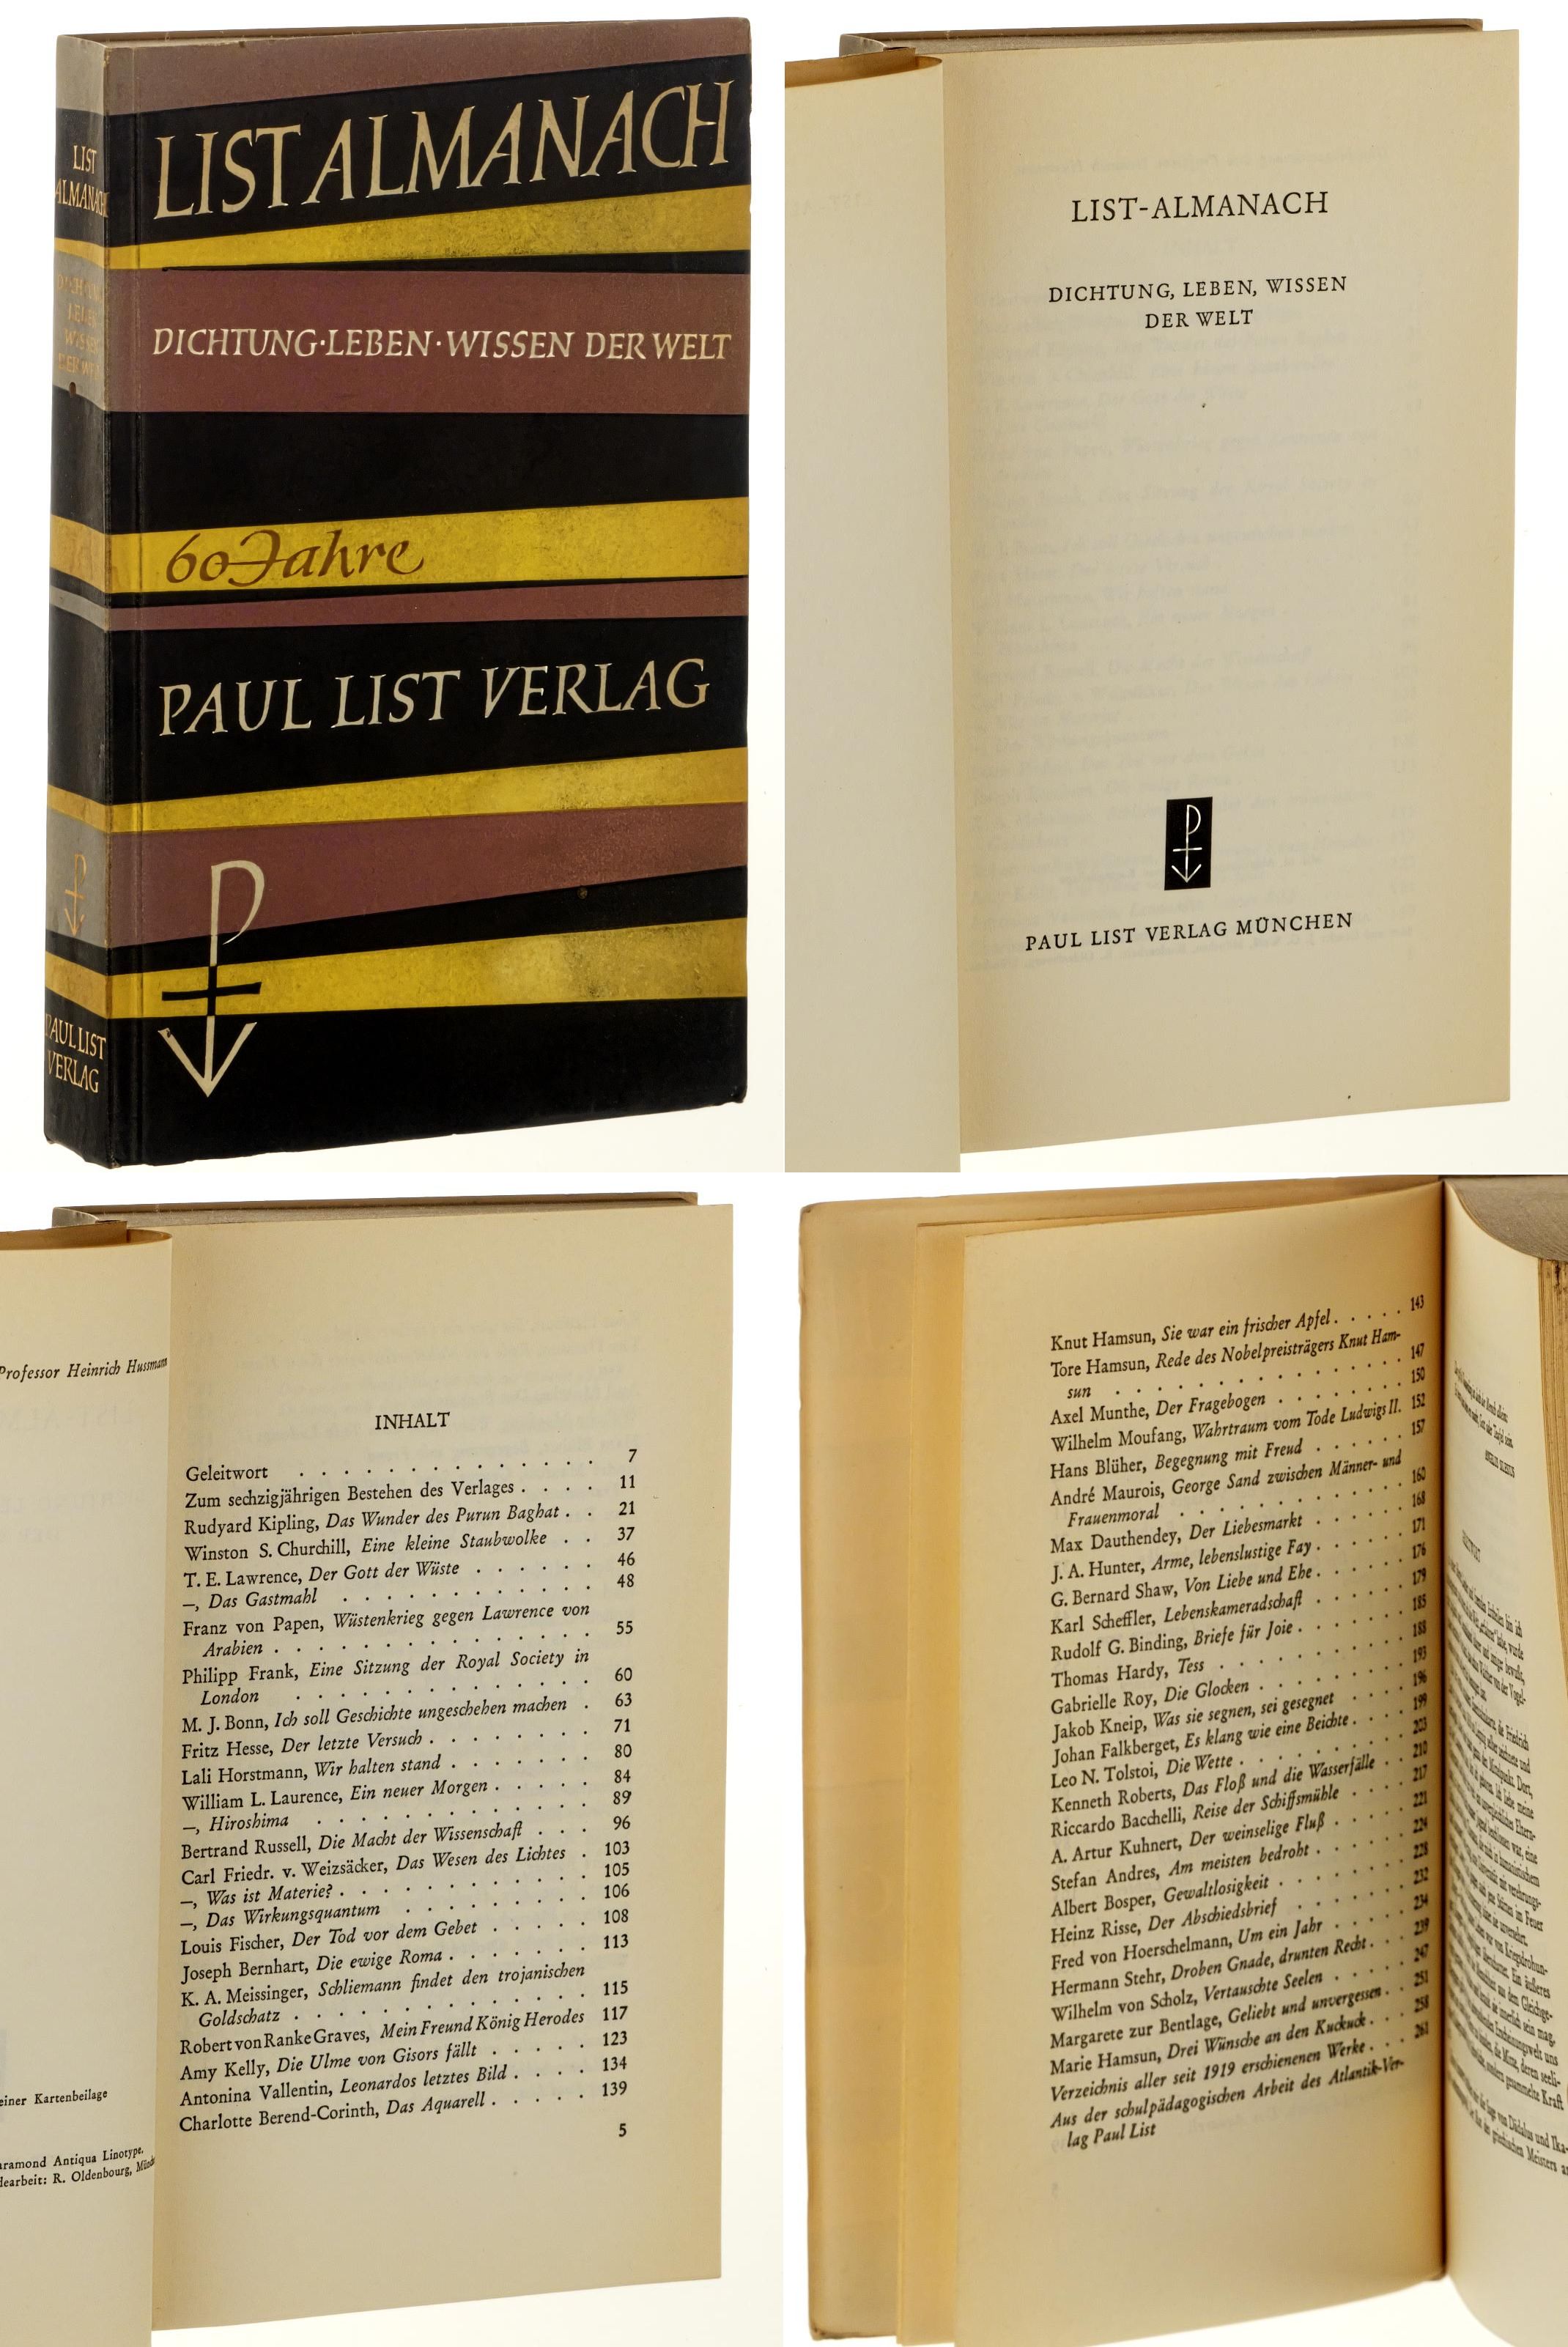   List-Almanach. Dichtung, Leben, Wissen der Welt. [60 Jahre Paul List Verlag]. 